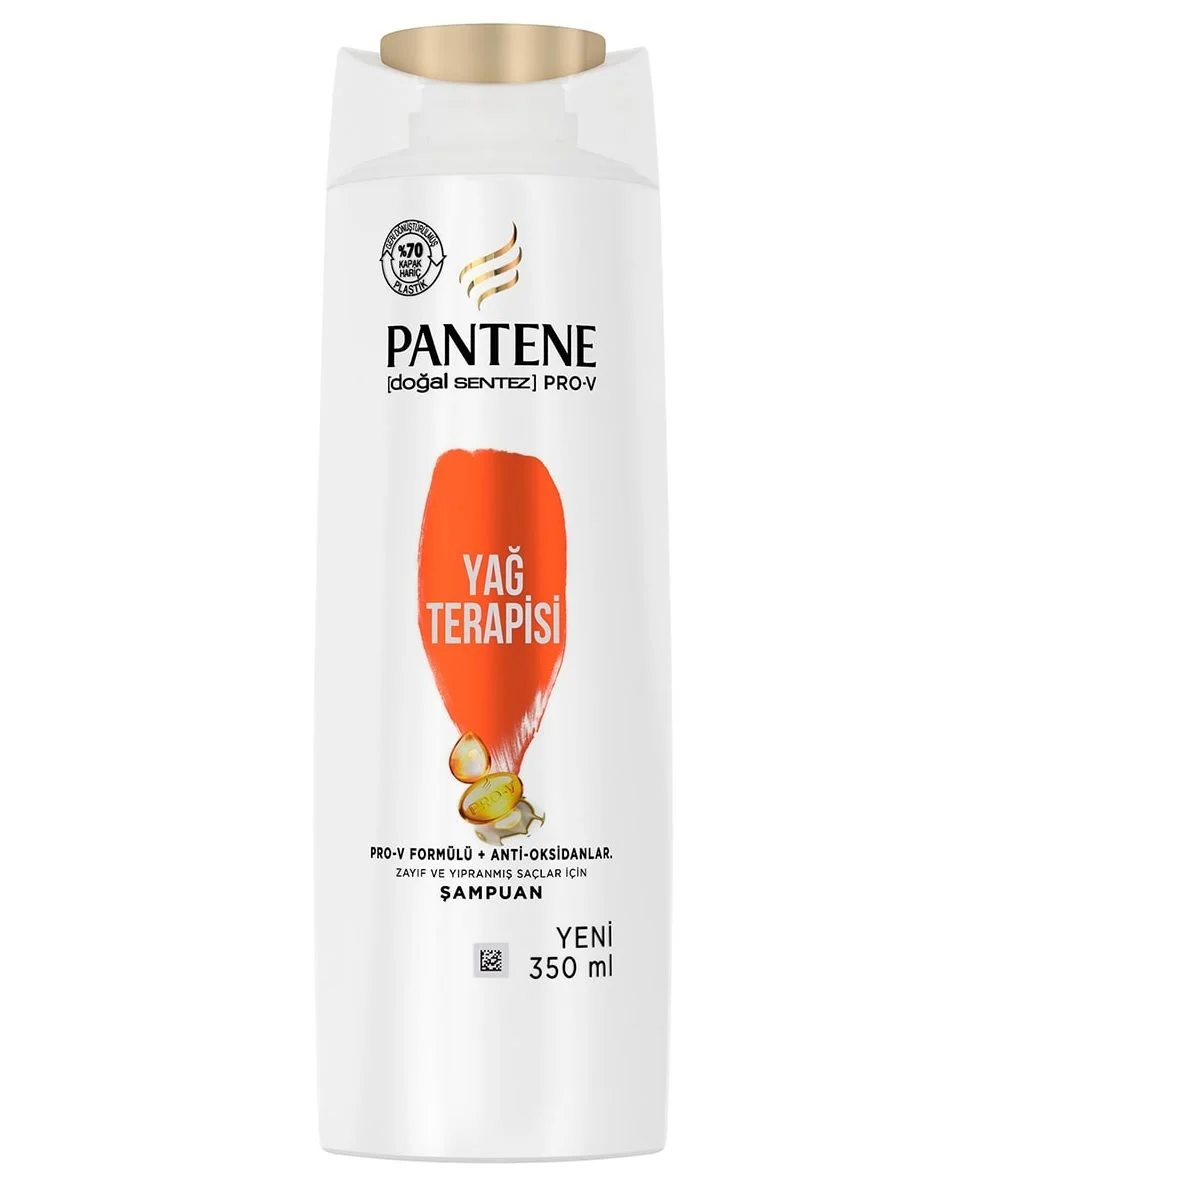 Pantene - Pantene Doğal Sentez Yağ Terapisi Şampuan 350 ml